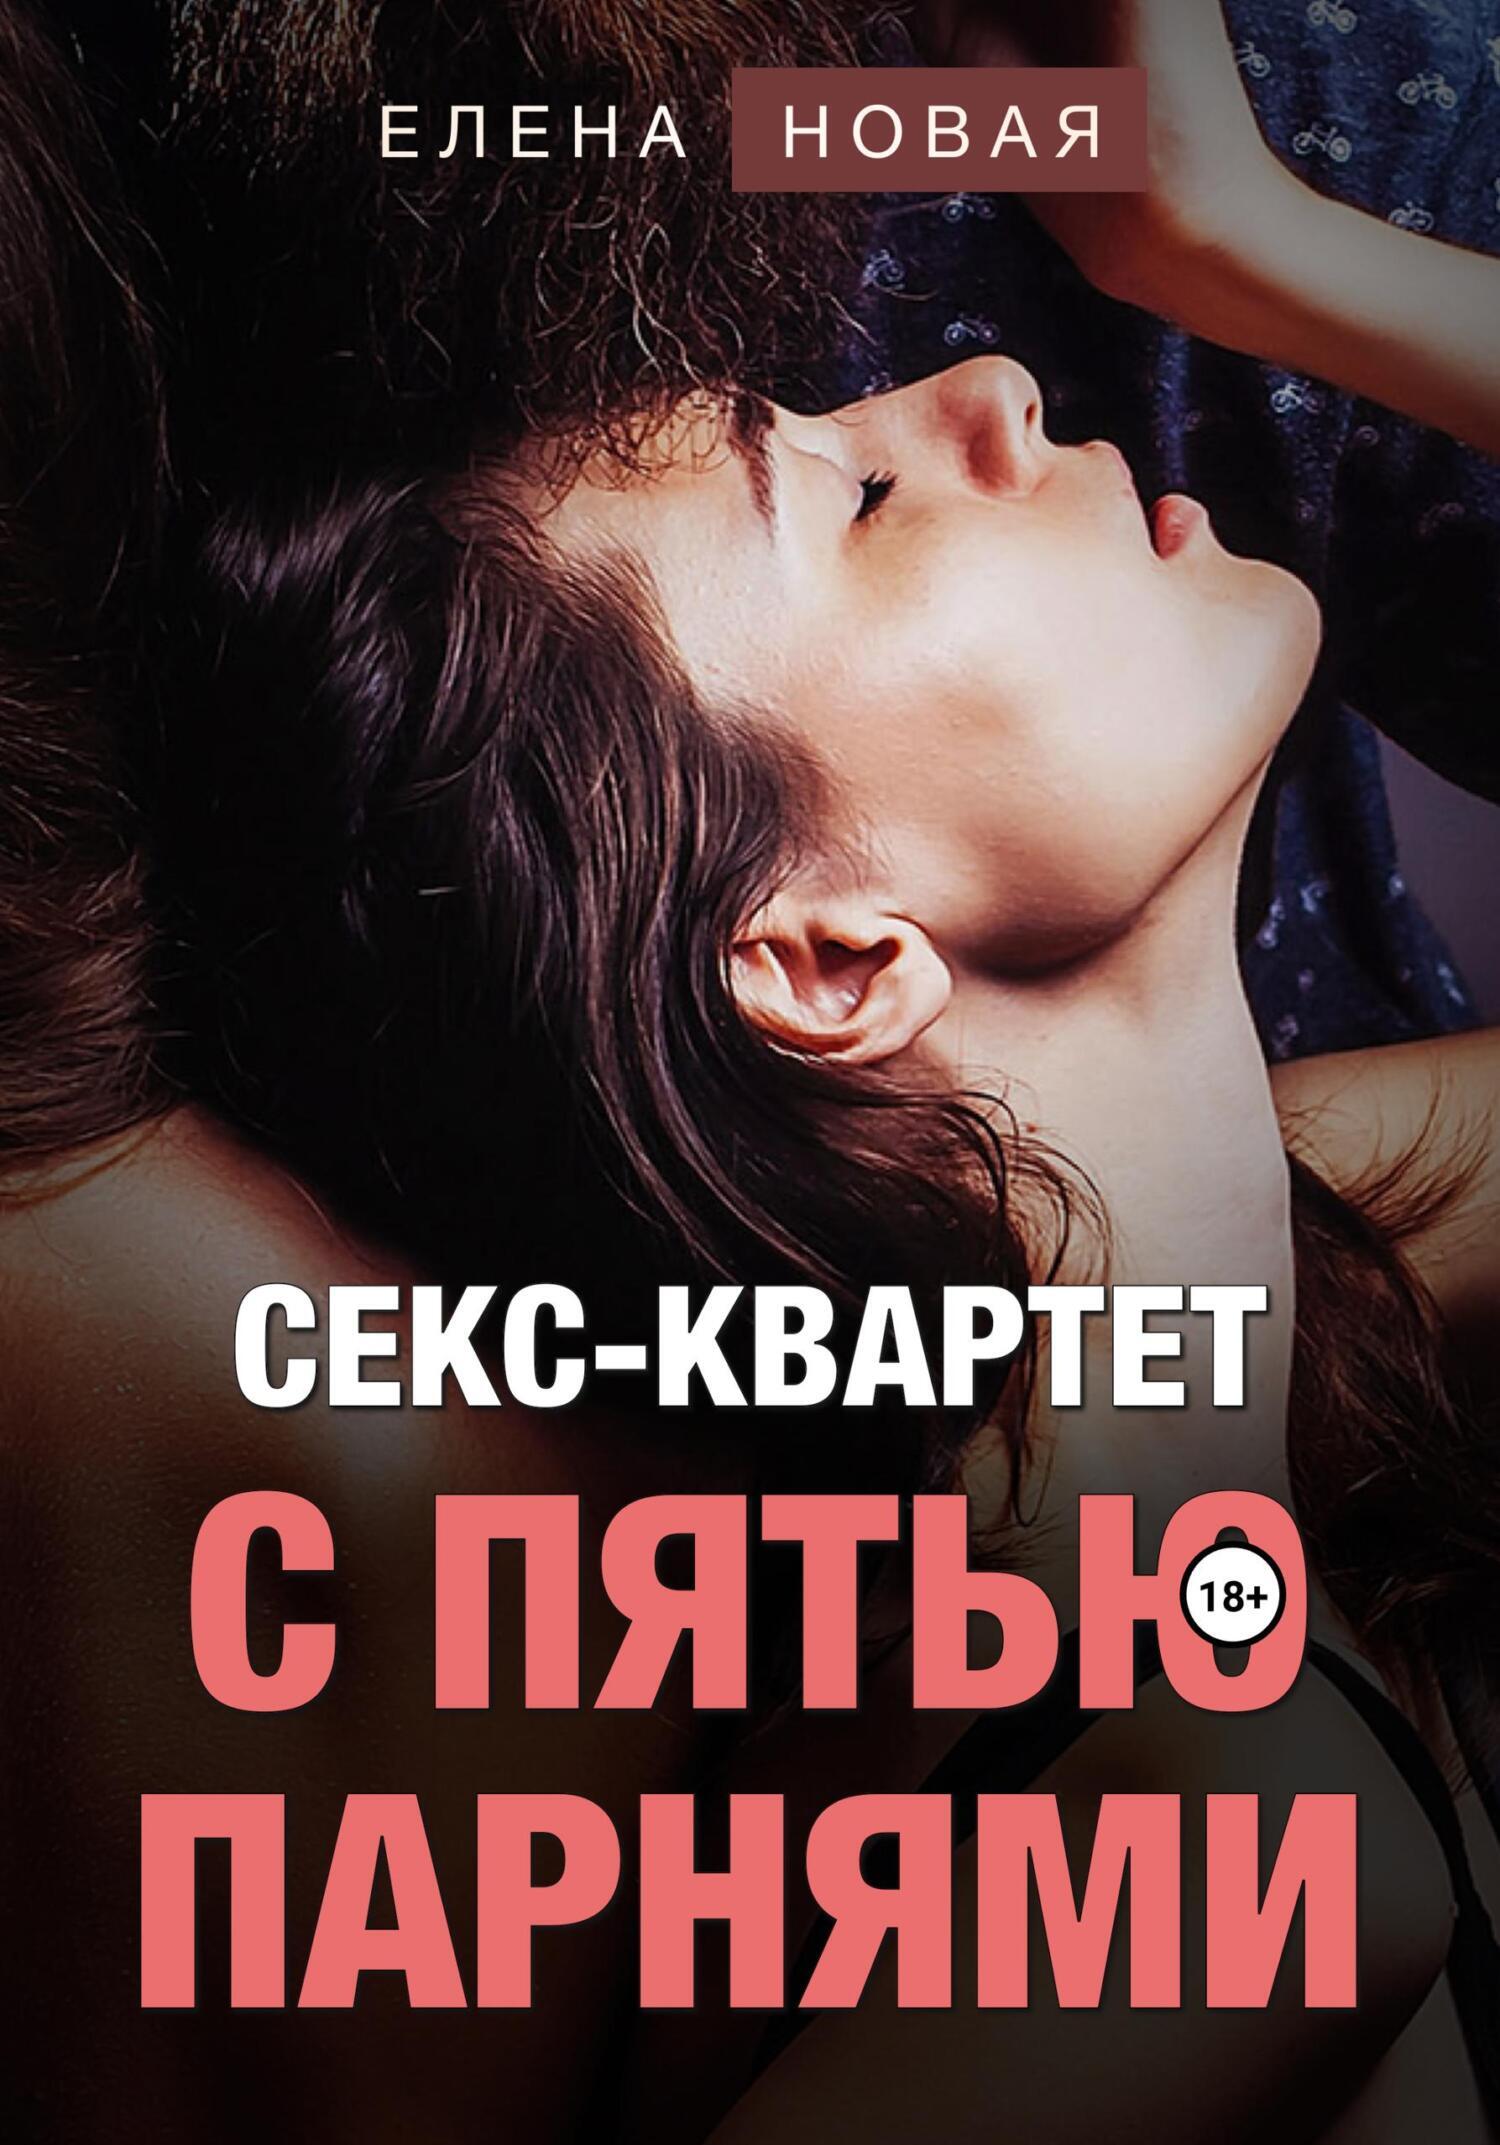 Секс-квартет с пятью парнями, Елена Новая – скачать книгу fb2, epub, pdf на ЛитРес